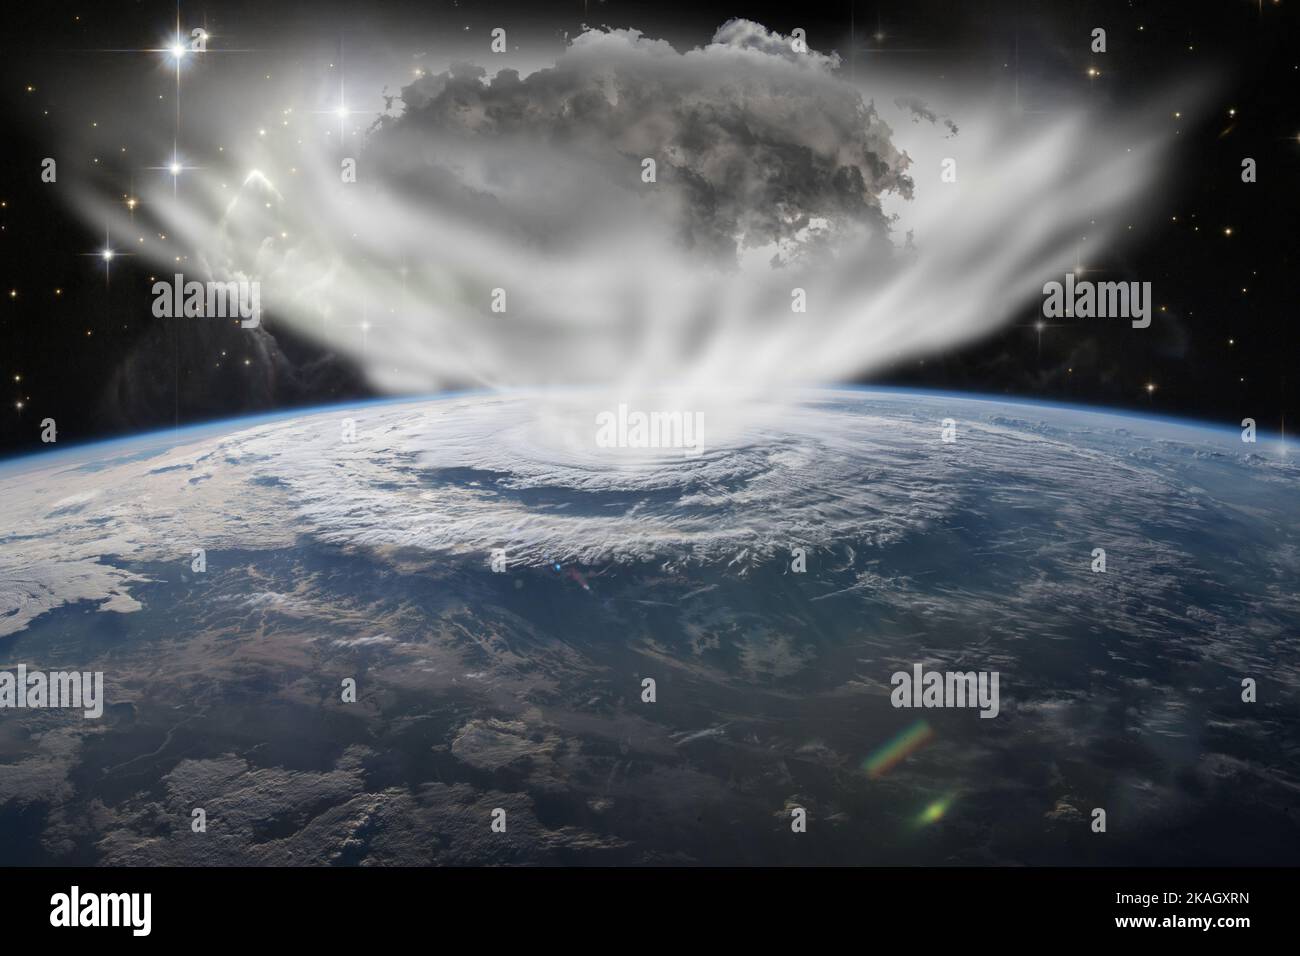 Ozonloch. Konzept der Luftlecks vom Planeten Erde zum Weltraum. Elemente dieses Bildes, die von der NASA eingerichtet wurden. Stockfoto